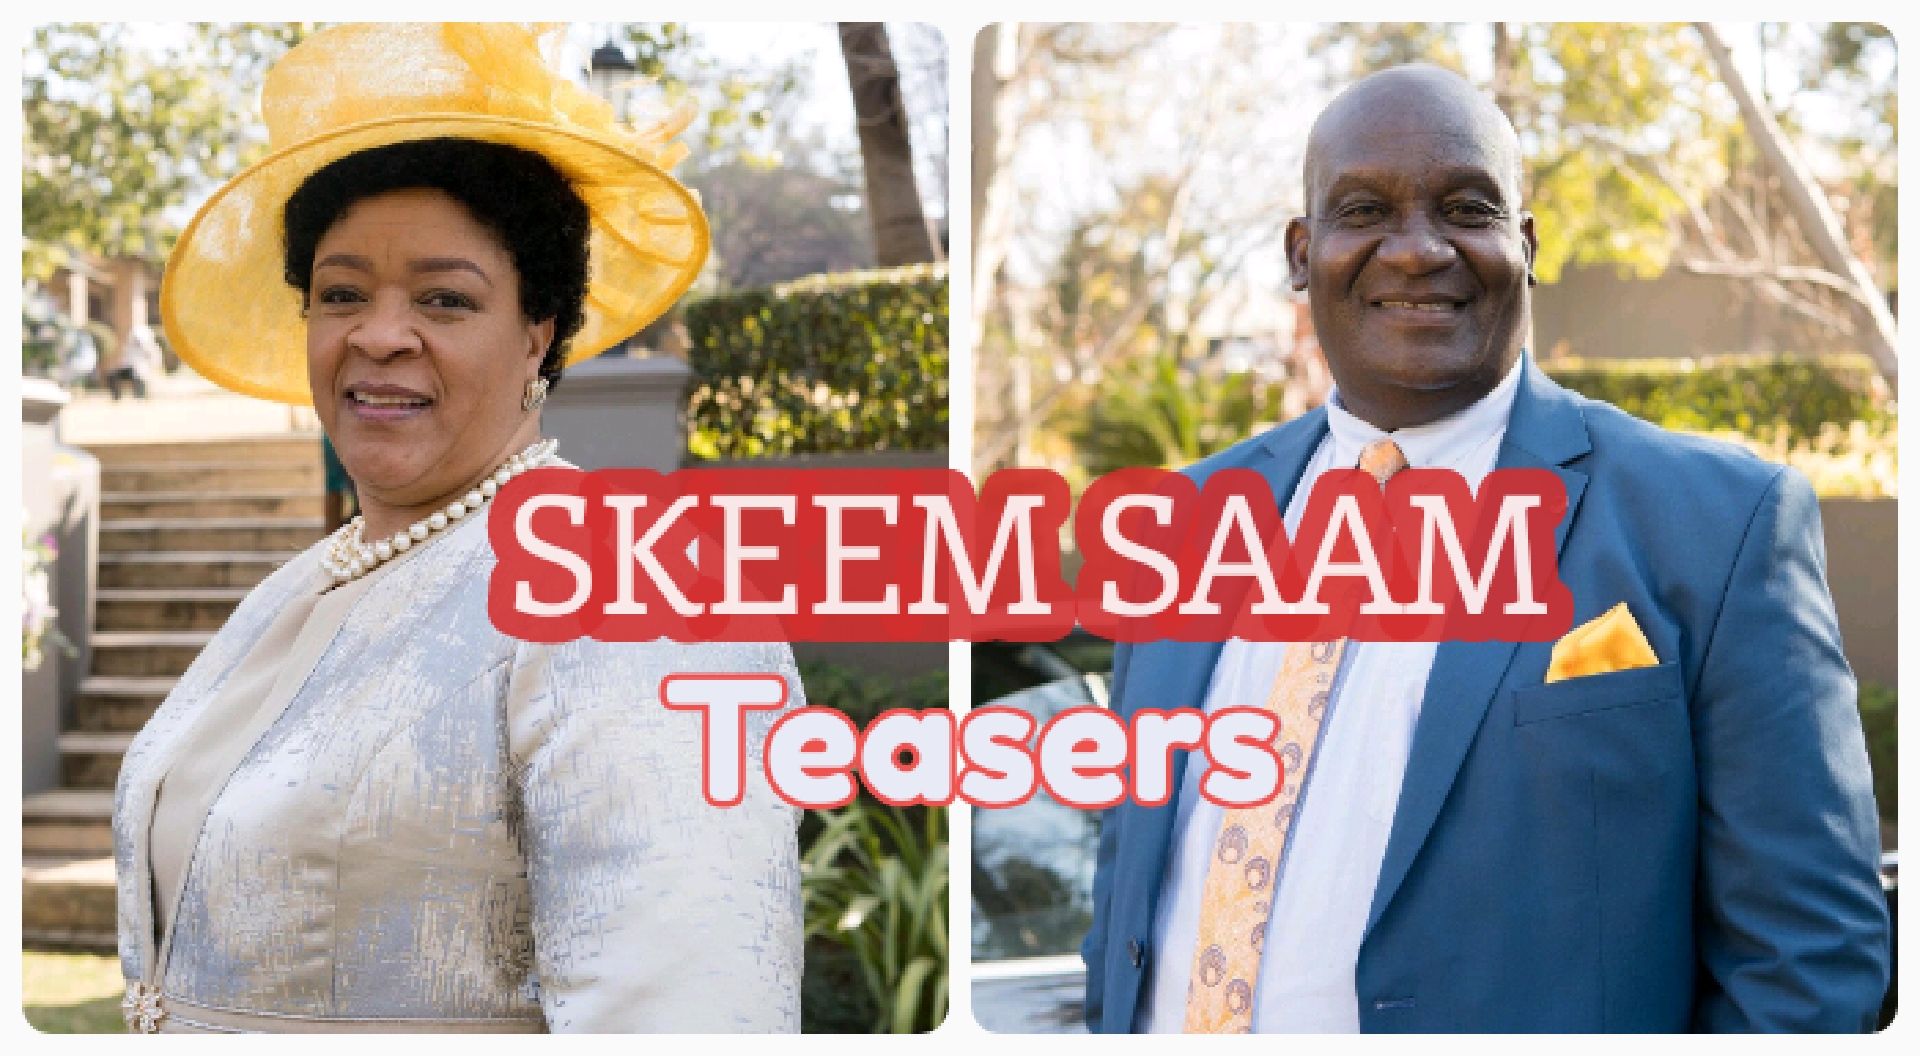 Skeem Saam teasers March 2022